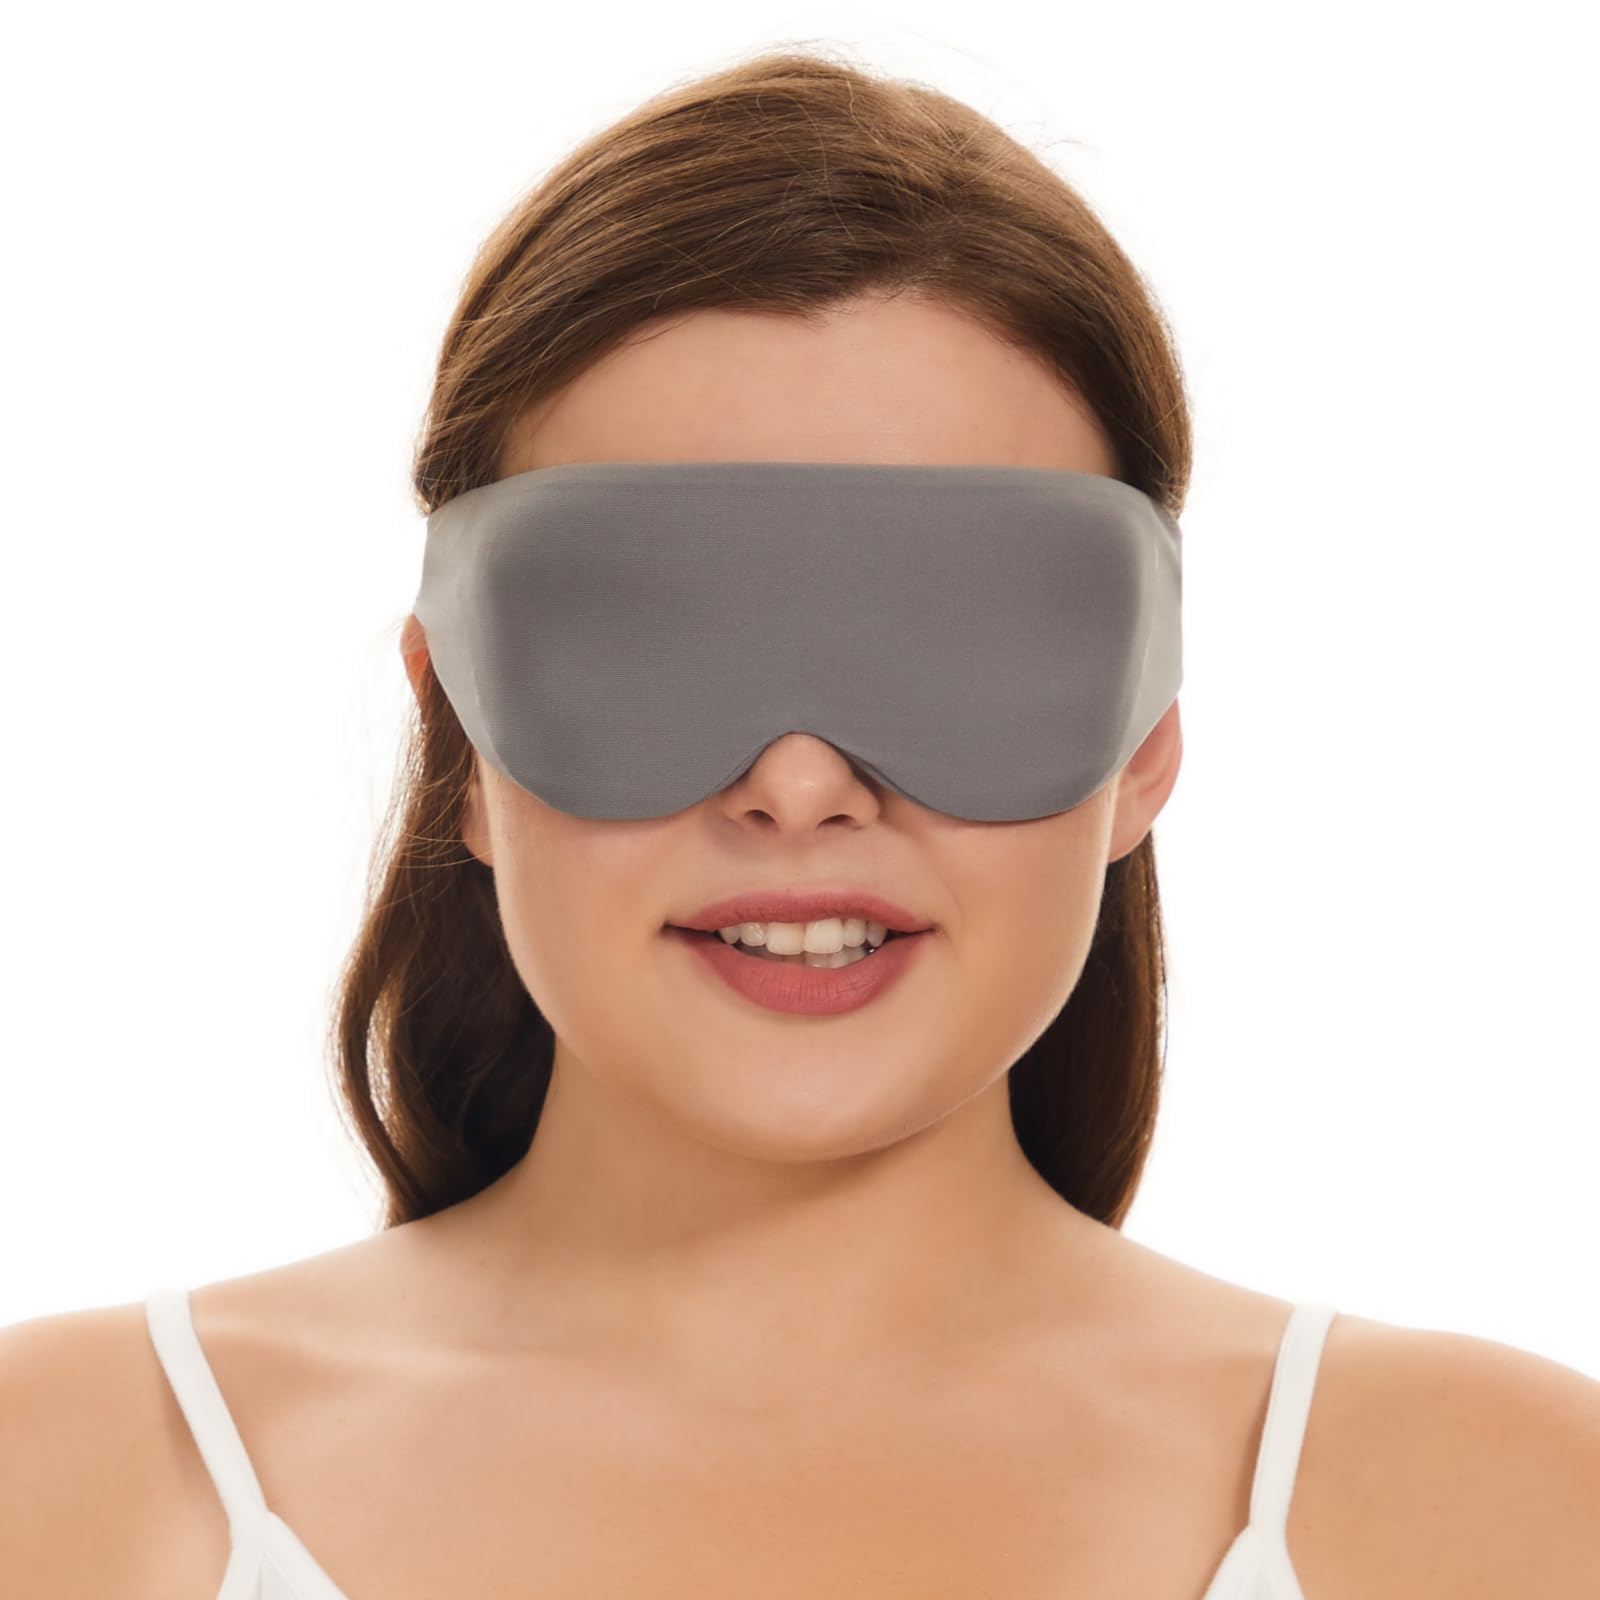 ALASKA BEAR Sleep Mask for Side Sleepers Best Eye Mask Contoured